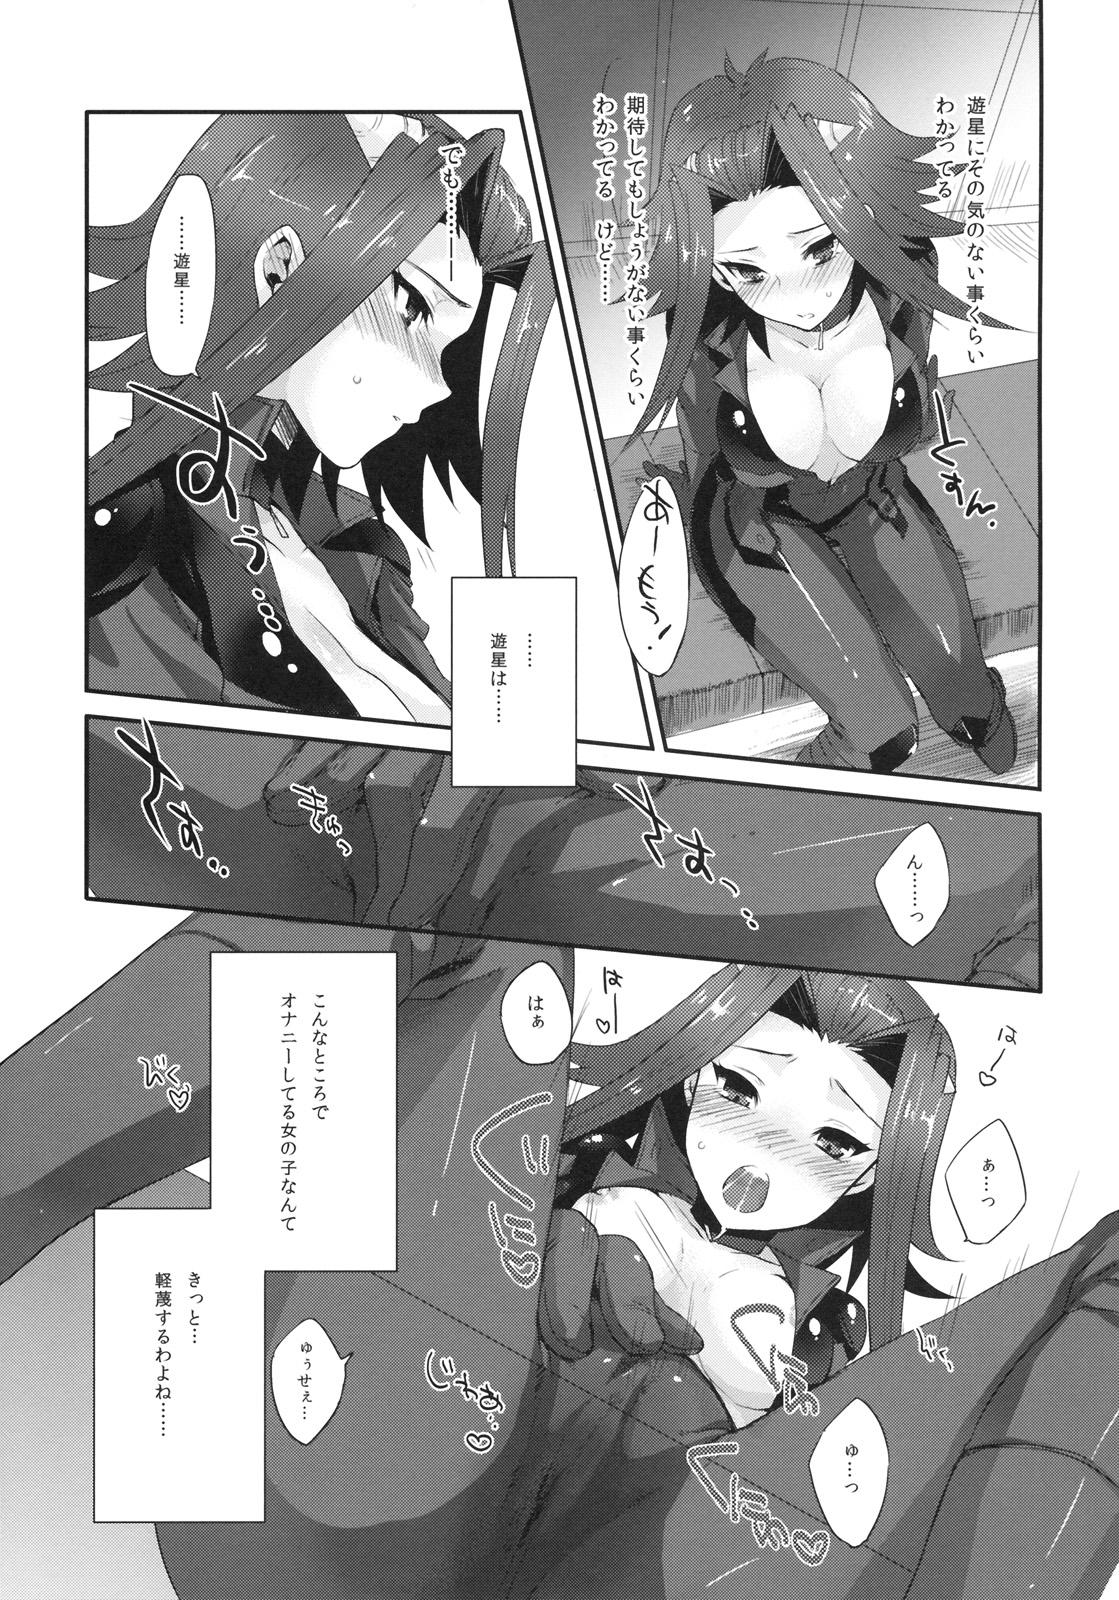 Tied Izayoi Emotion - Yu-gi-oh 5ds Bottom - Page 4